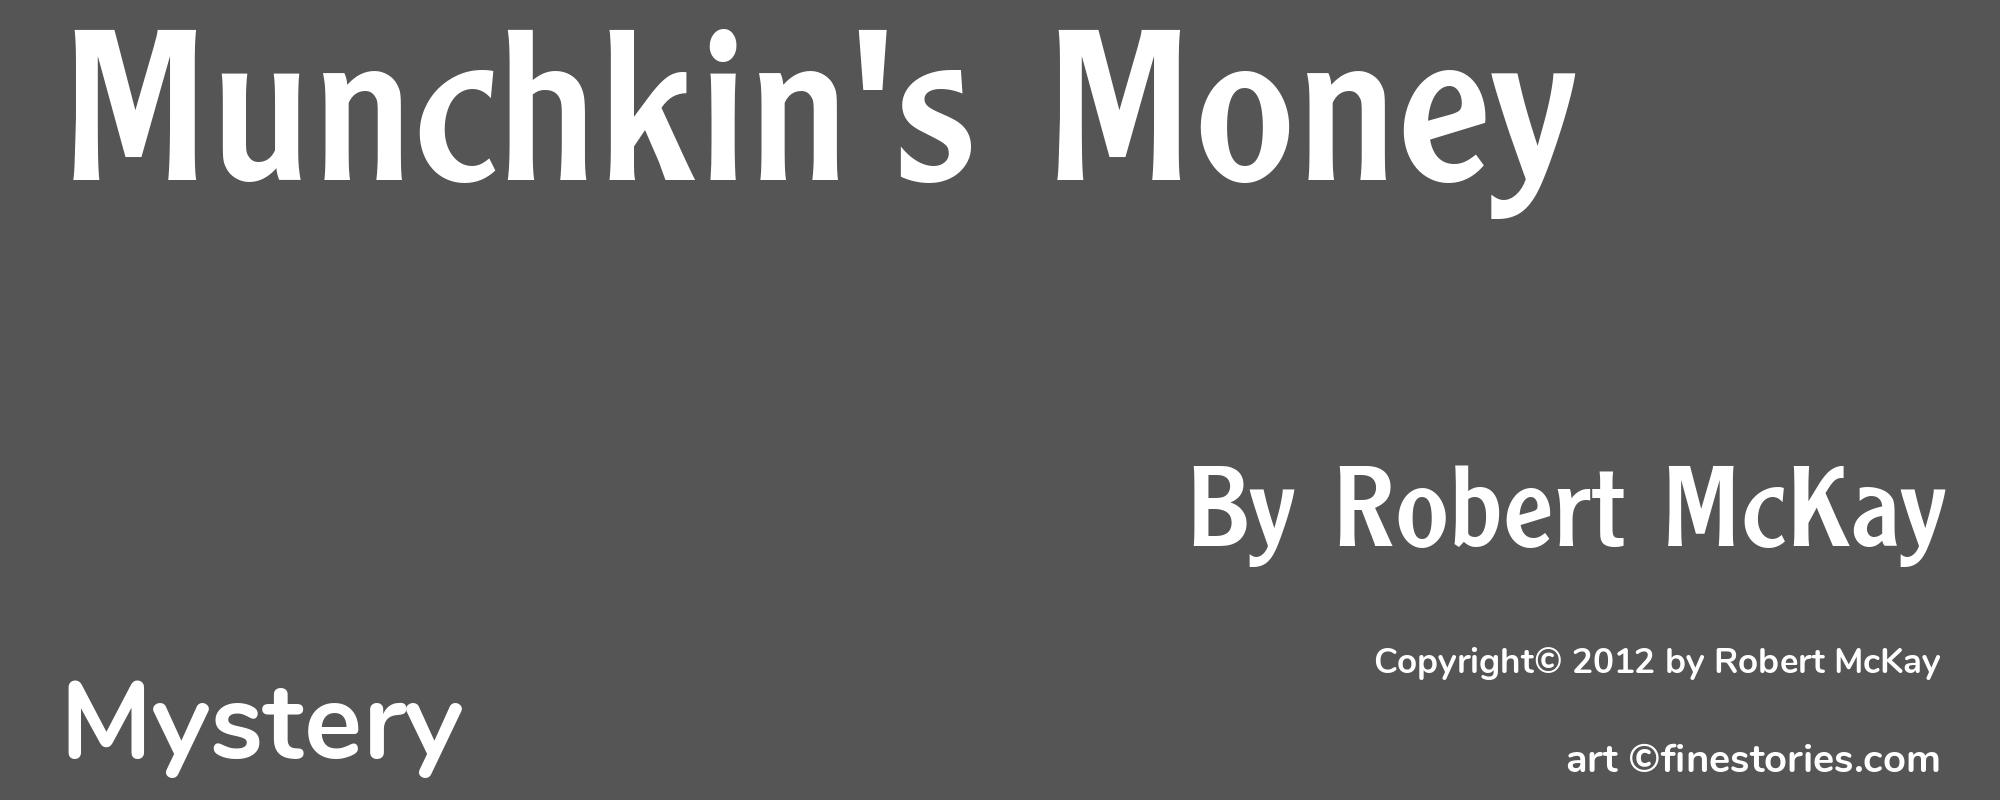 Munchkin's Money - Cover